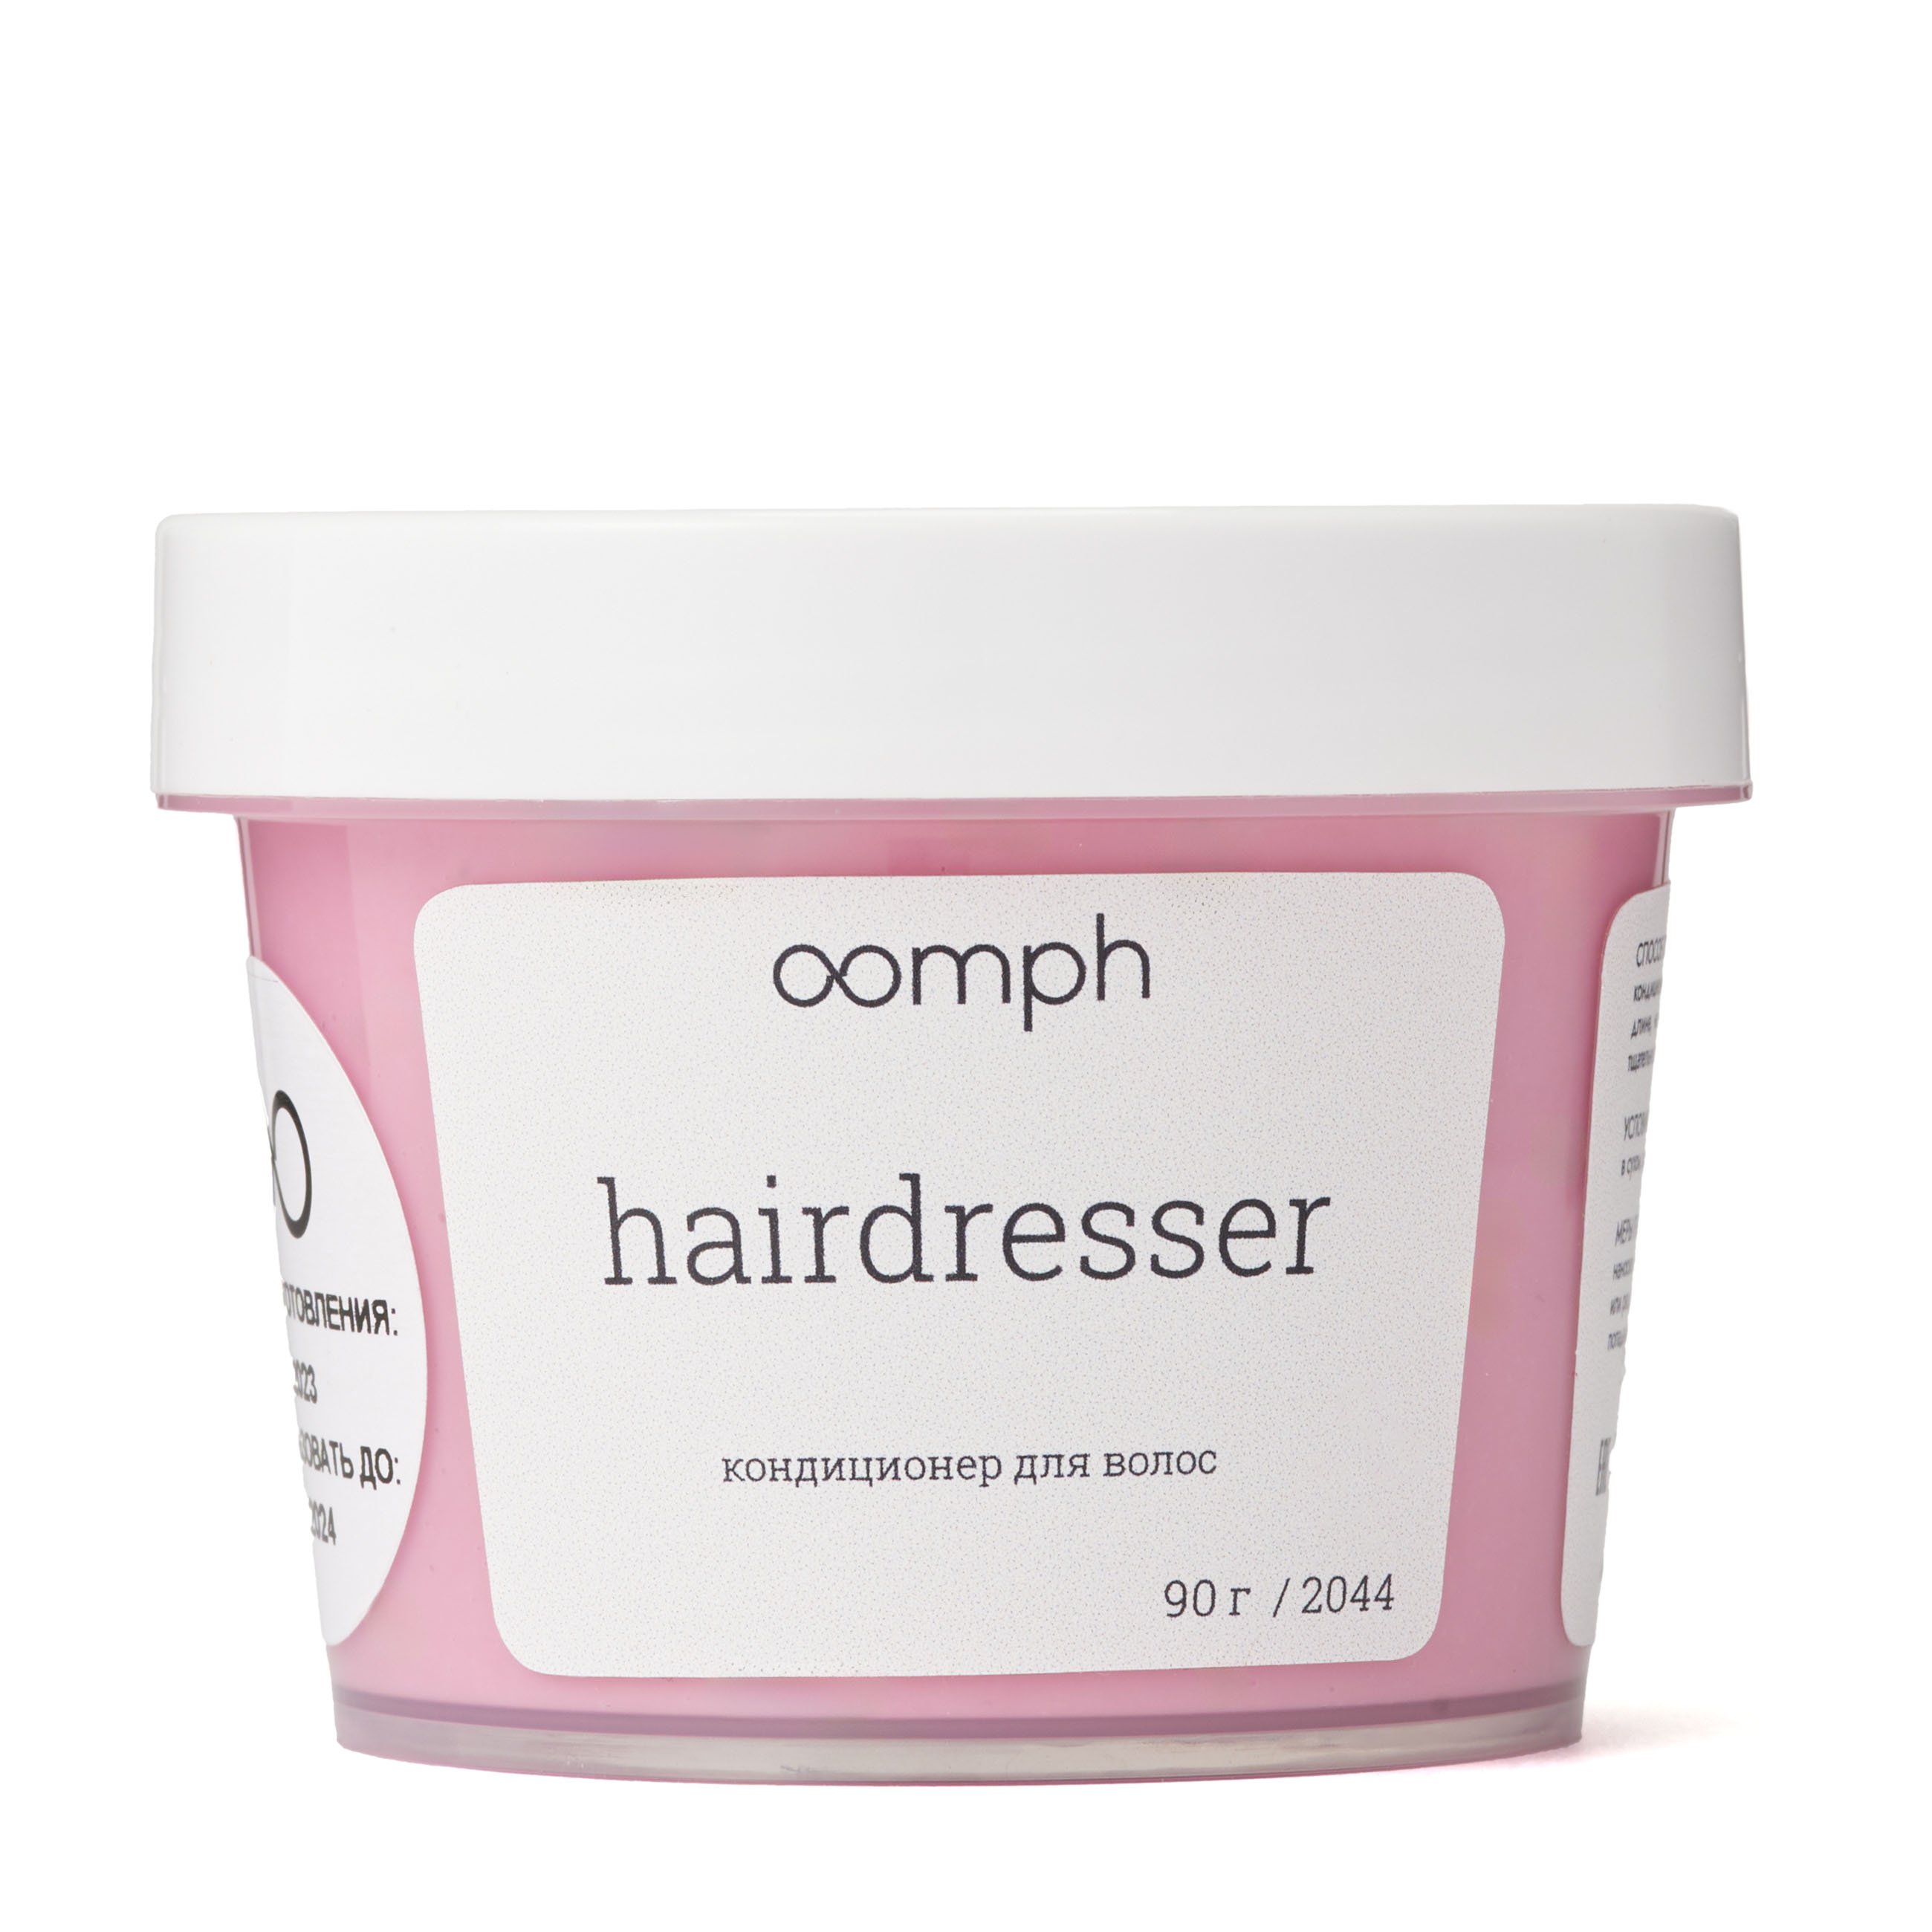 Кондиционер для волос OOMPH Hairdresser 90г